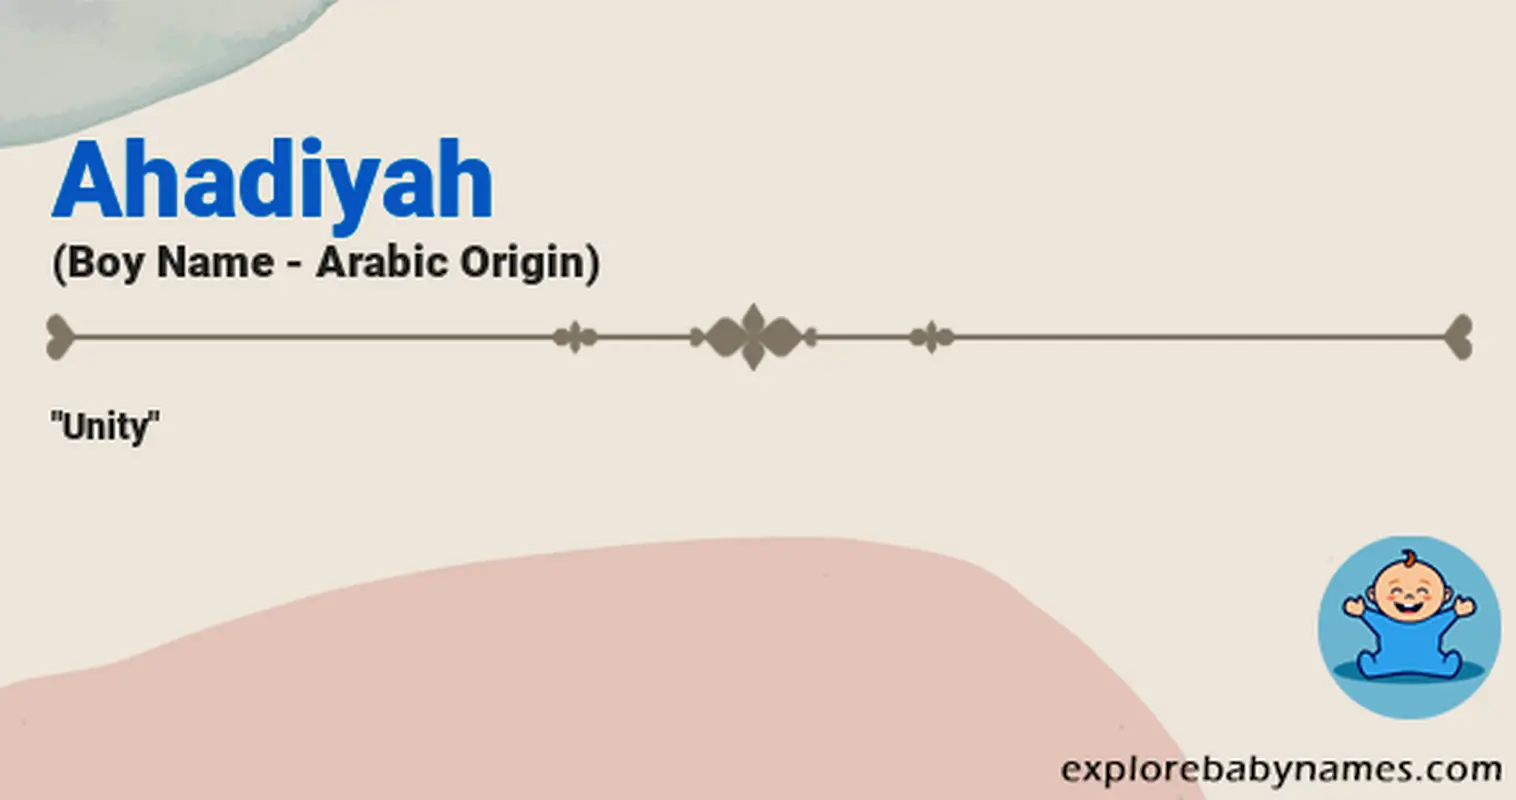 Meaning of Ahadiyah